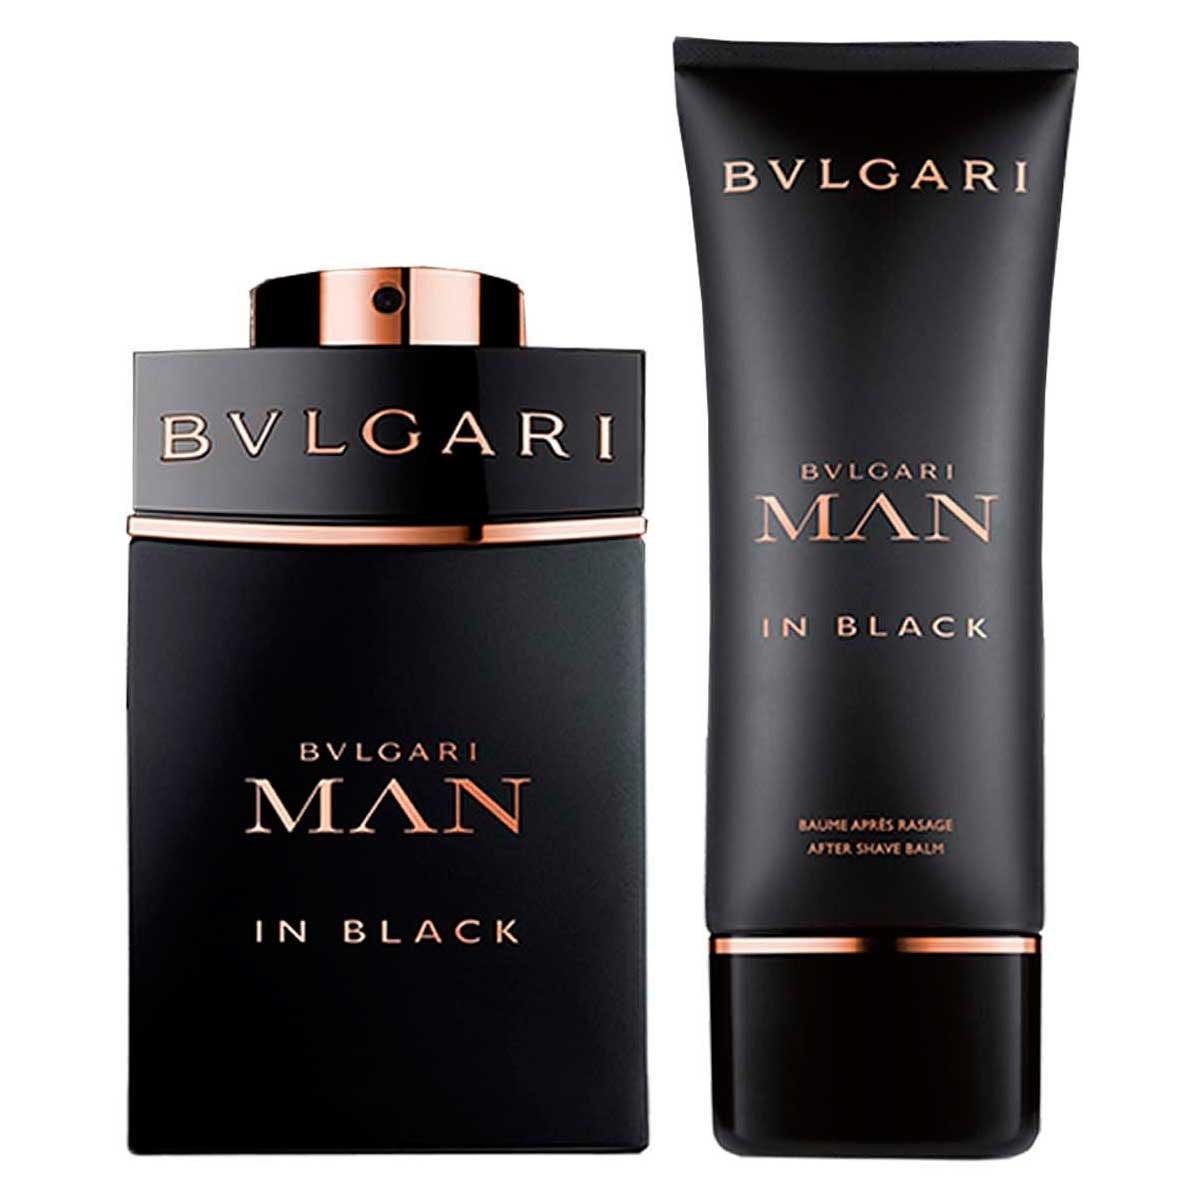 Estuche para Caballero Bvlgari Man In Black Edp 100Ml